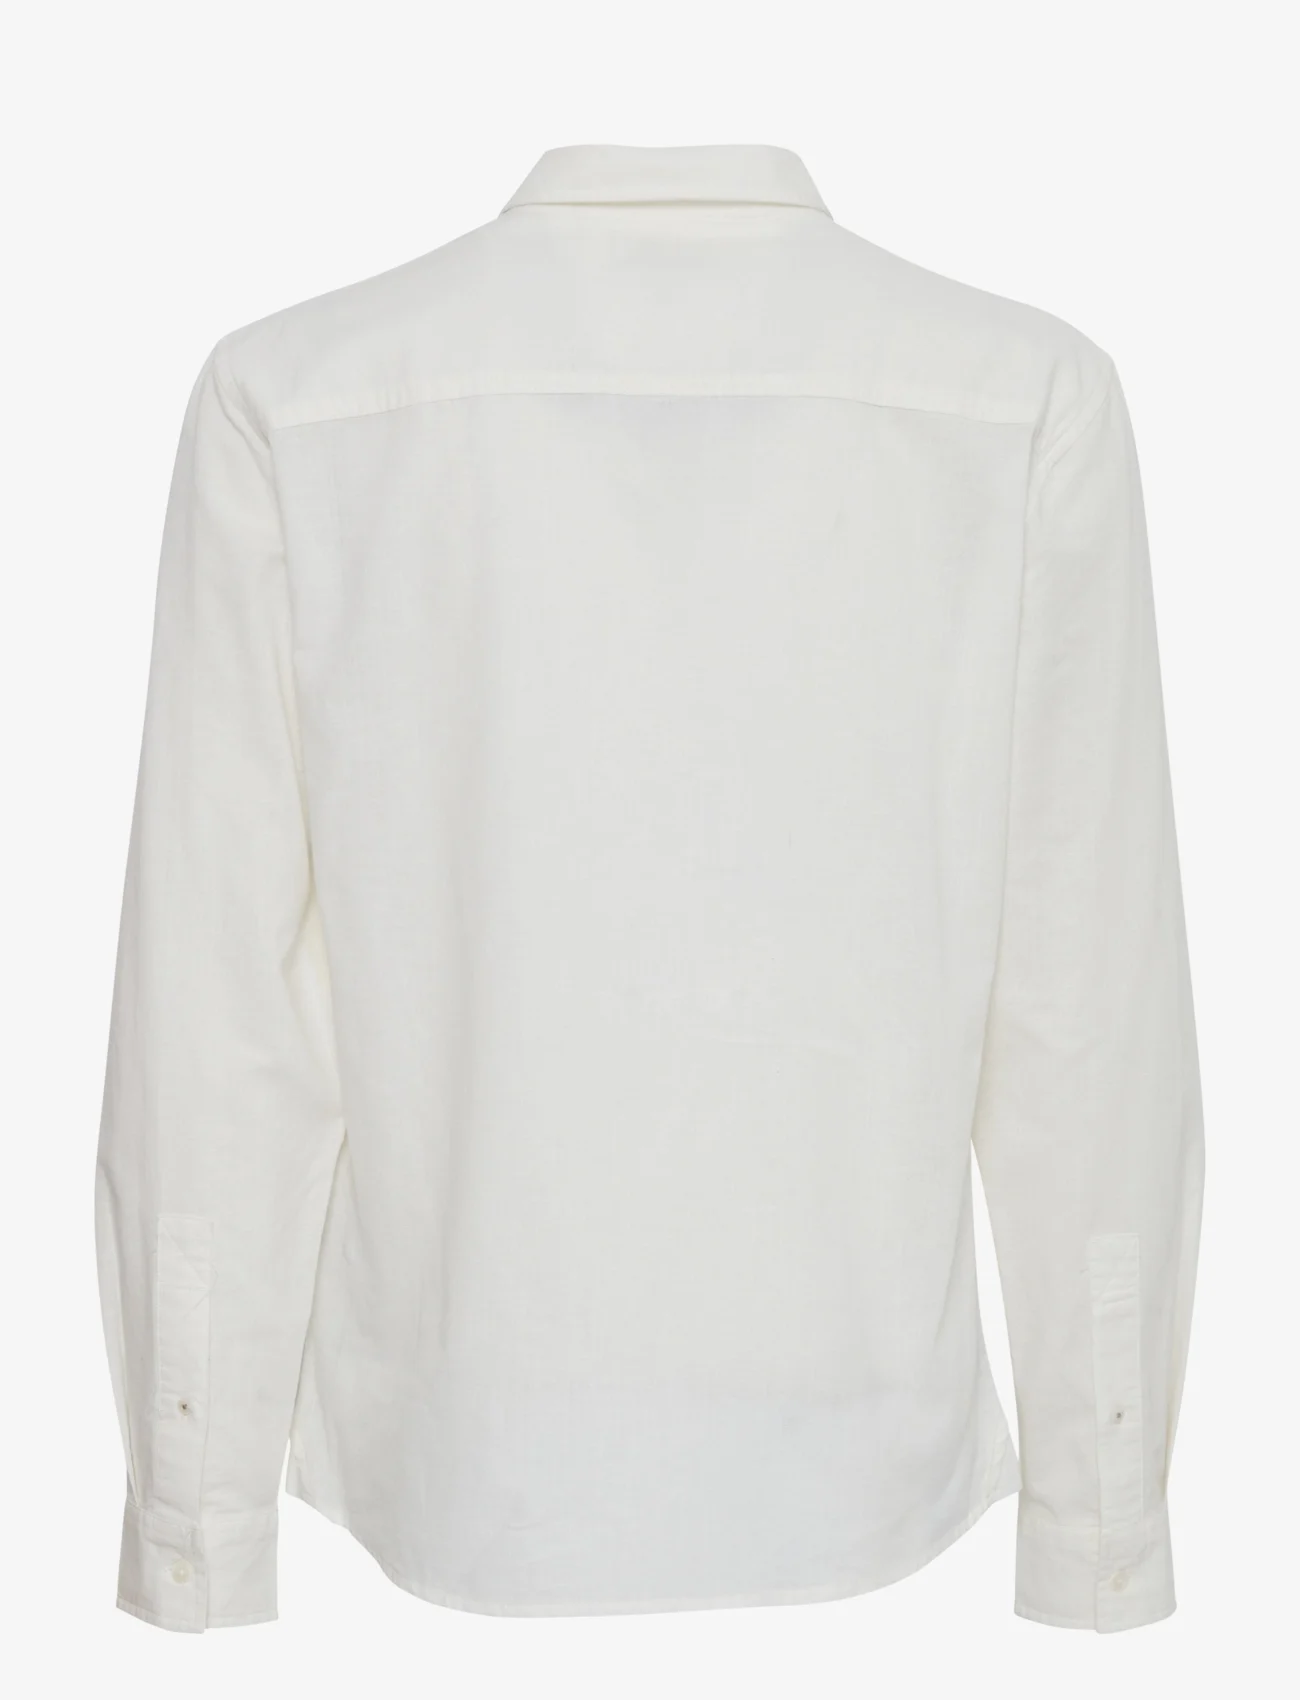 Blend - Shirt - avslappede skjorter - snow white - 1